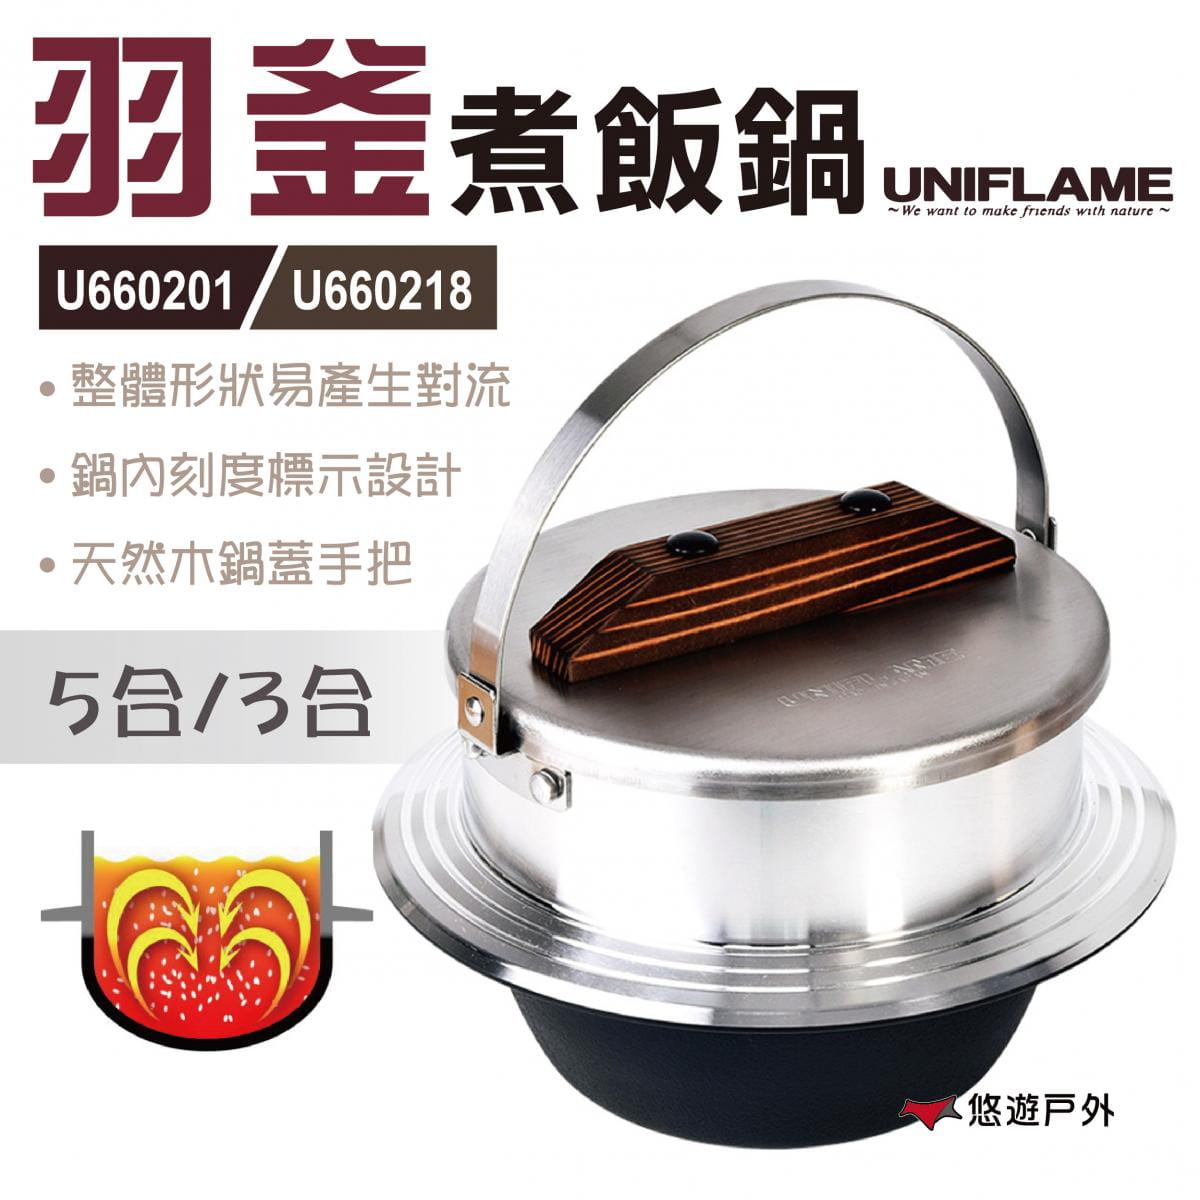 【日本UNIFLAME】羽釜煮飯鍋5合 U660201 0